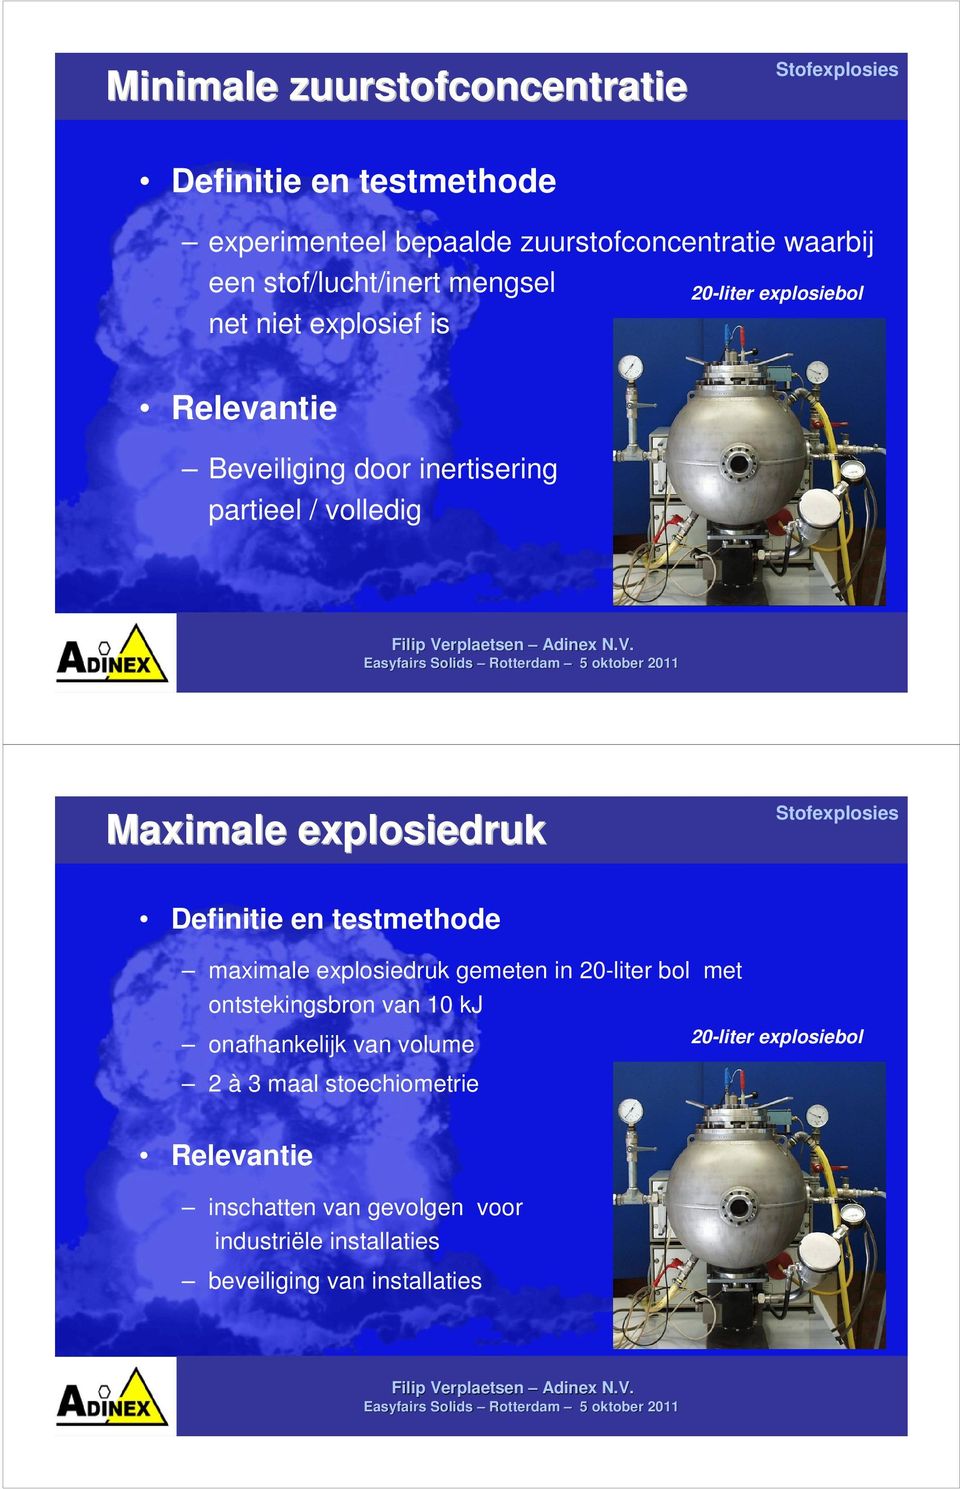 explosiedruk Definitie en testmethode maximale explosiedruk gemeten in 20-liter bol met ontstekingsbron van 10 kj onafhankelijk van